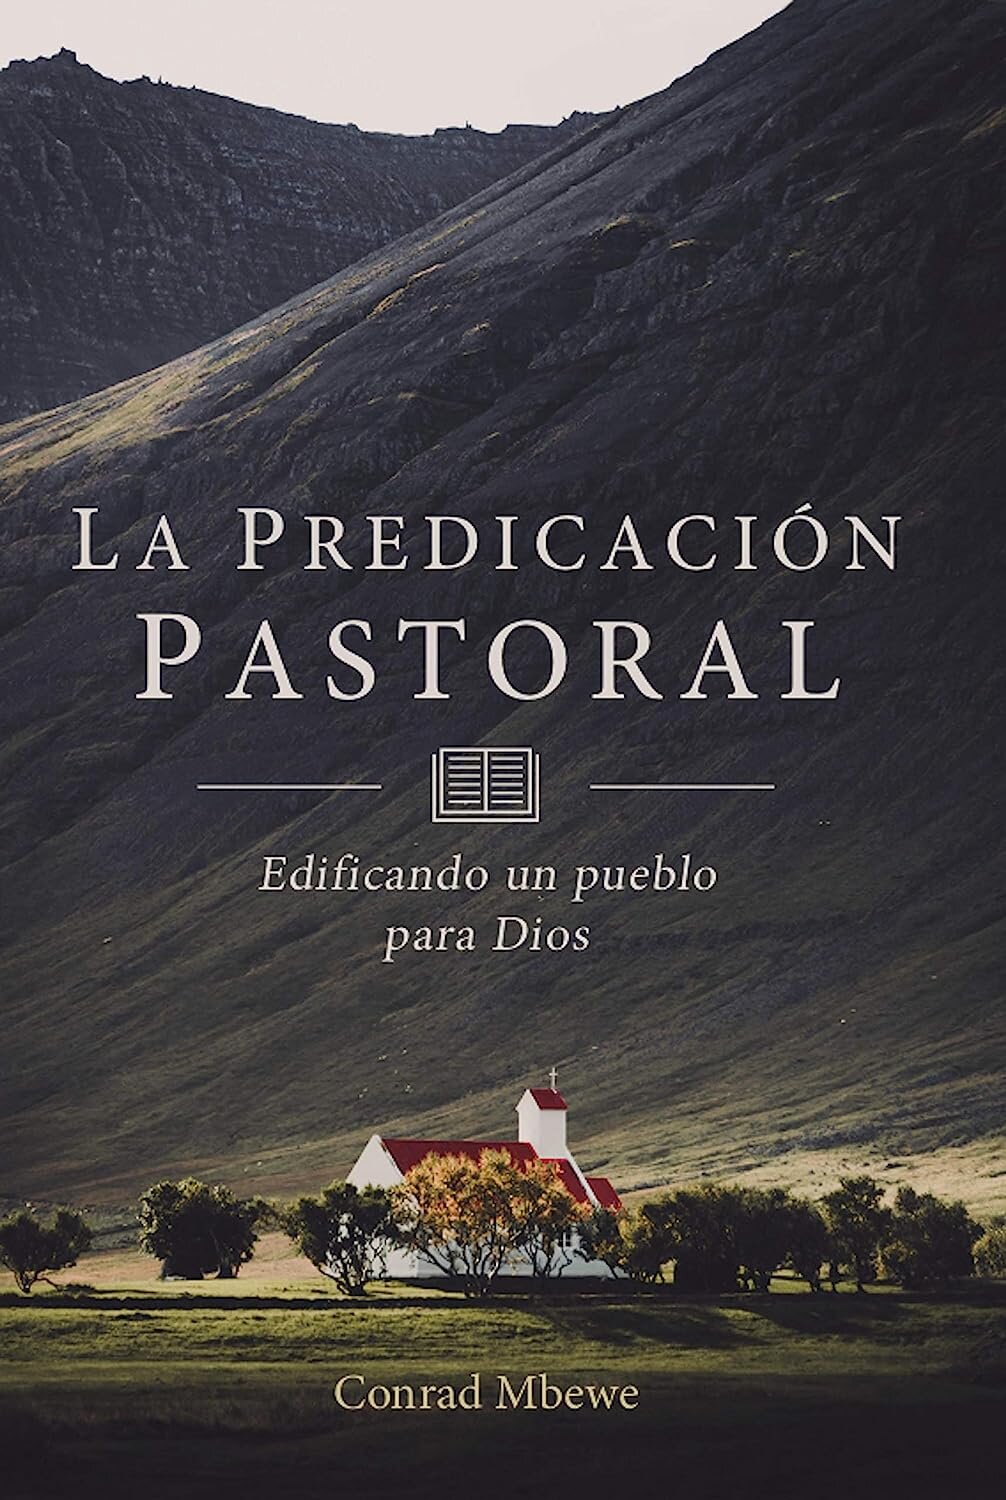 La Predicación Pastoral: Edificando un pueblo para Dios